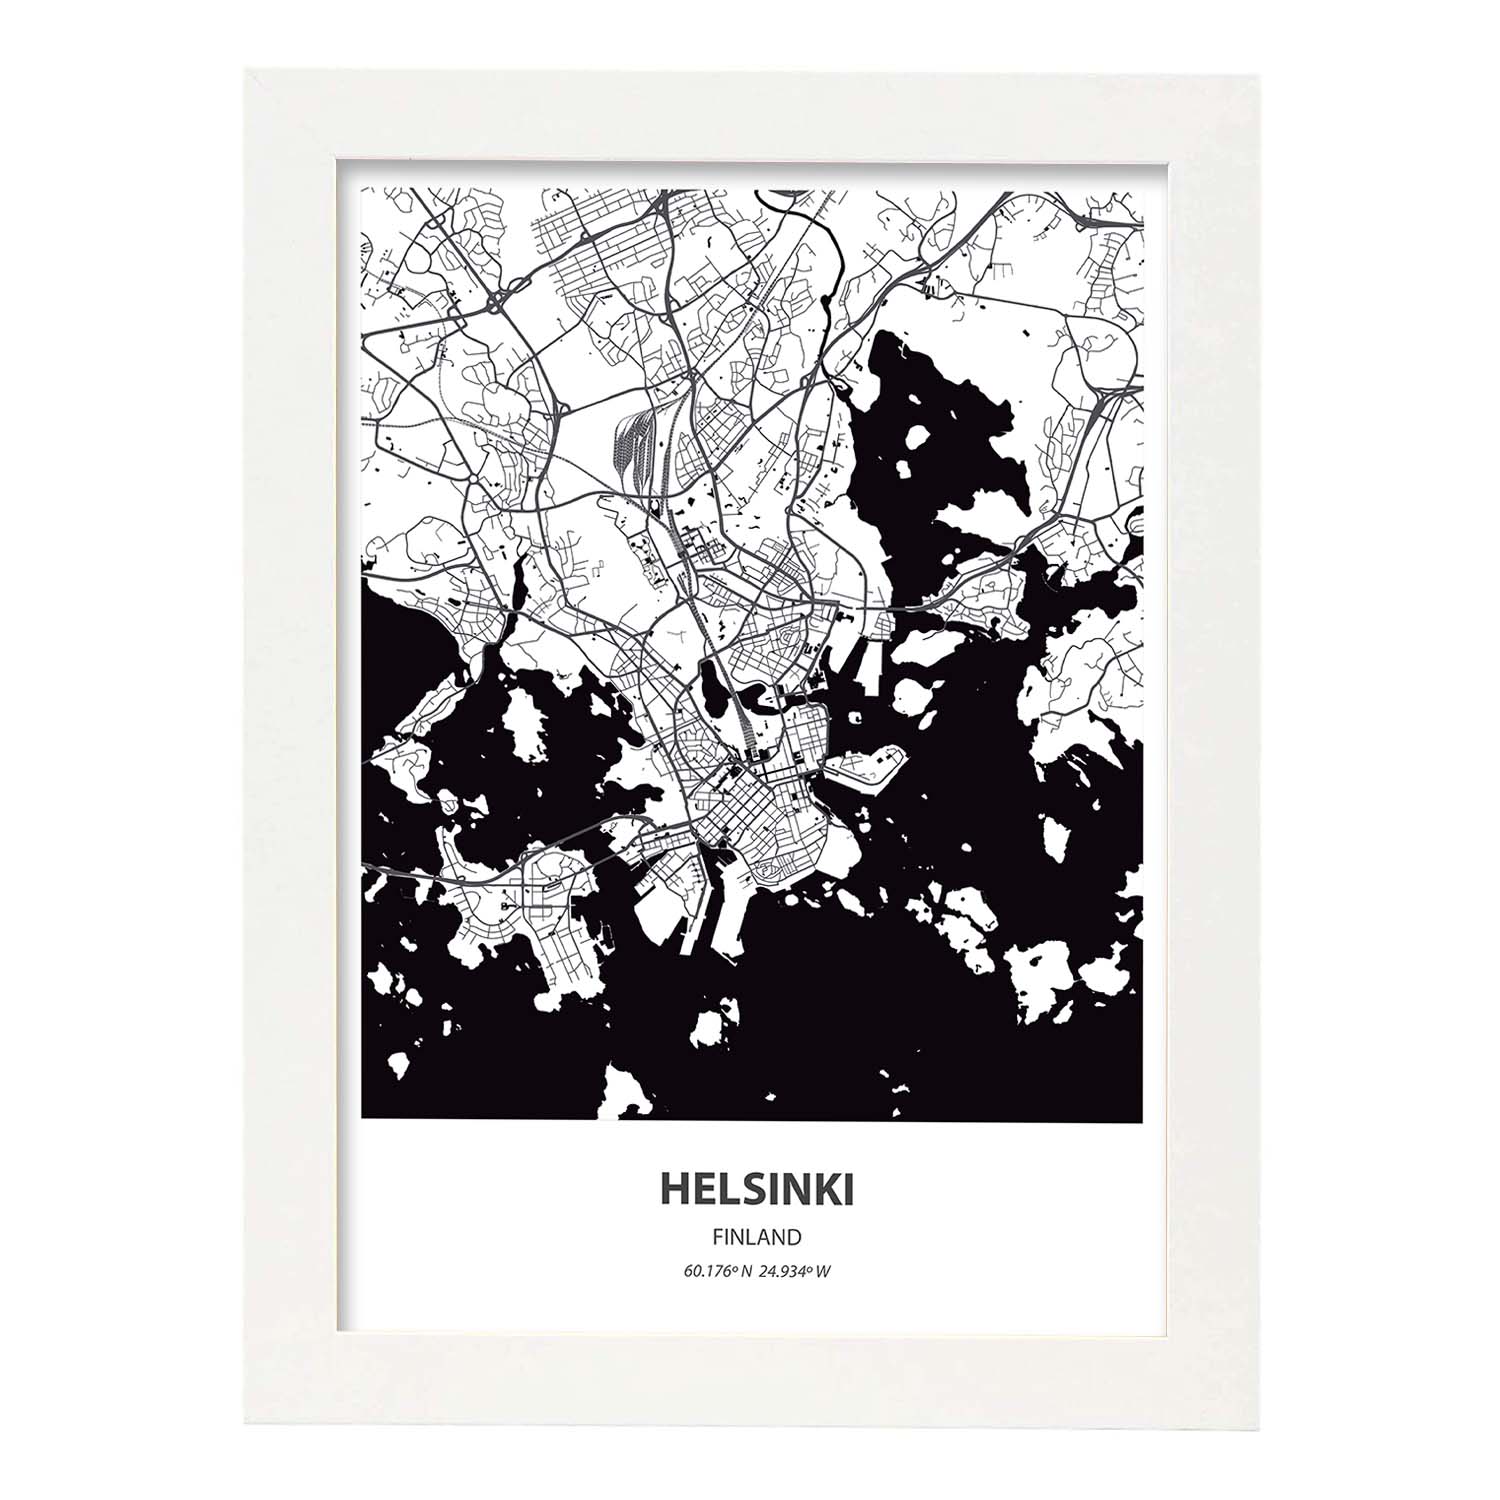 Poster con mapa de Helsinki - Finlandia. Láminas de ciudades del norte de Europa con mares y ríos en color negro.-Artwork-Nacnic-A4-Marco Blanco-Nacnic Estudio SL